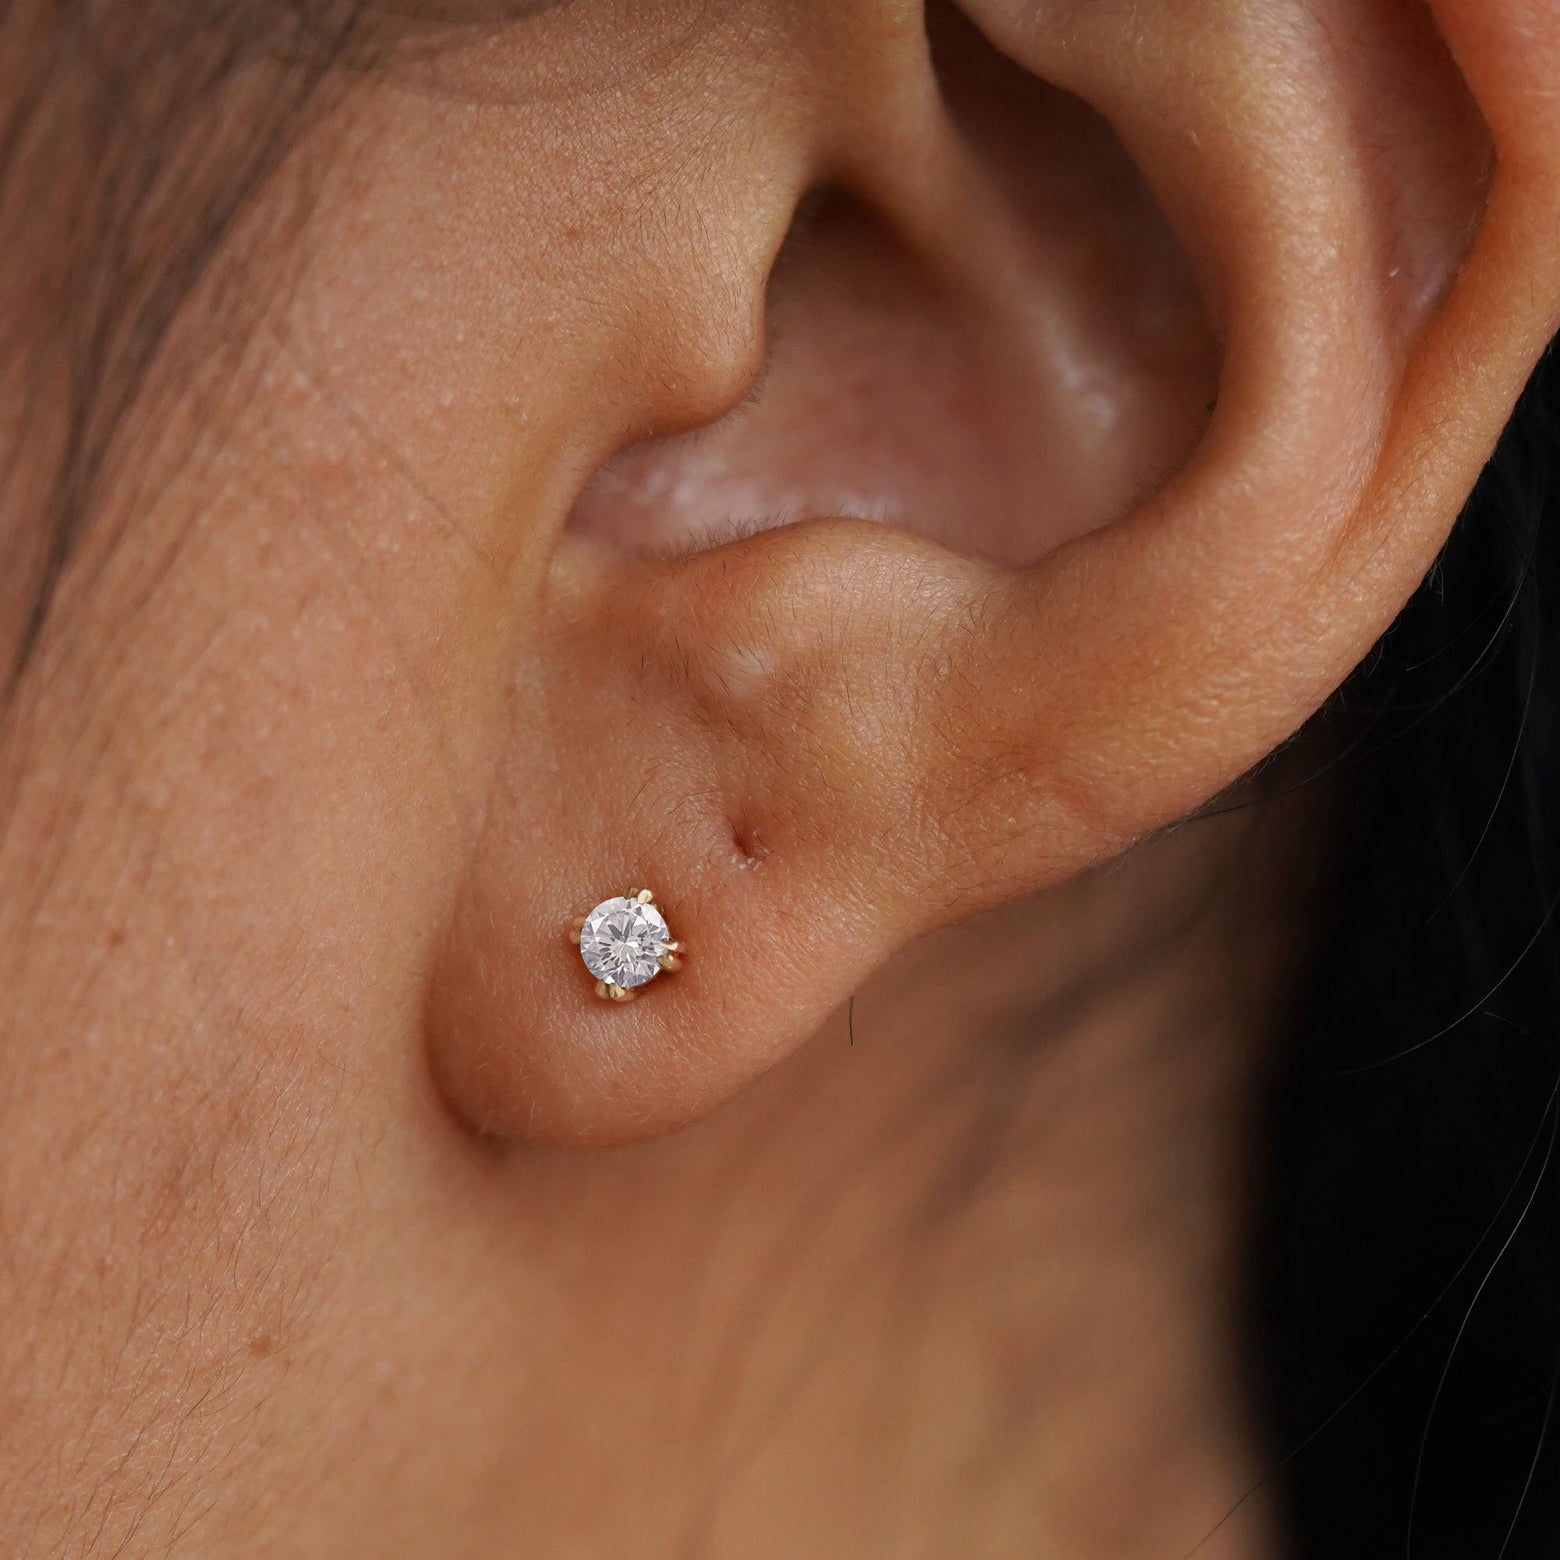 A model's ear wearing a 14k gold Moissanite Earring